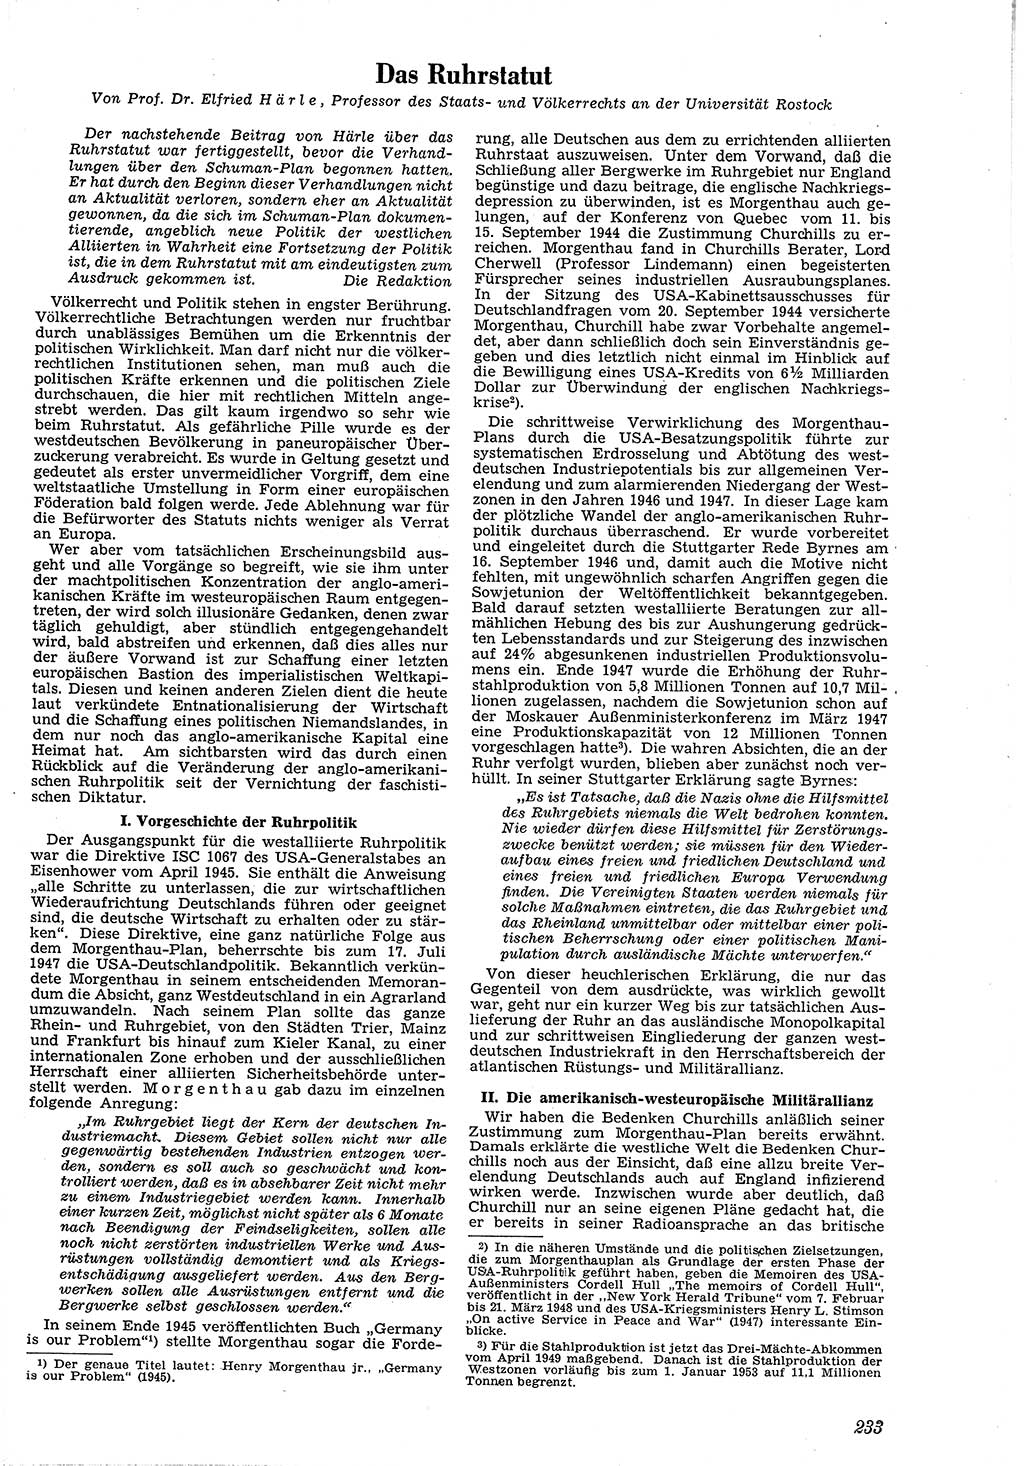 Neue Justiz (NJ), Zeitschrift für Recht und Rechtswissenschaft [Deutsche Demokratische Republik (DDR)], 4. Jahrgang 1950, Seite 233 (NJ DDR 1950, S. 233)